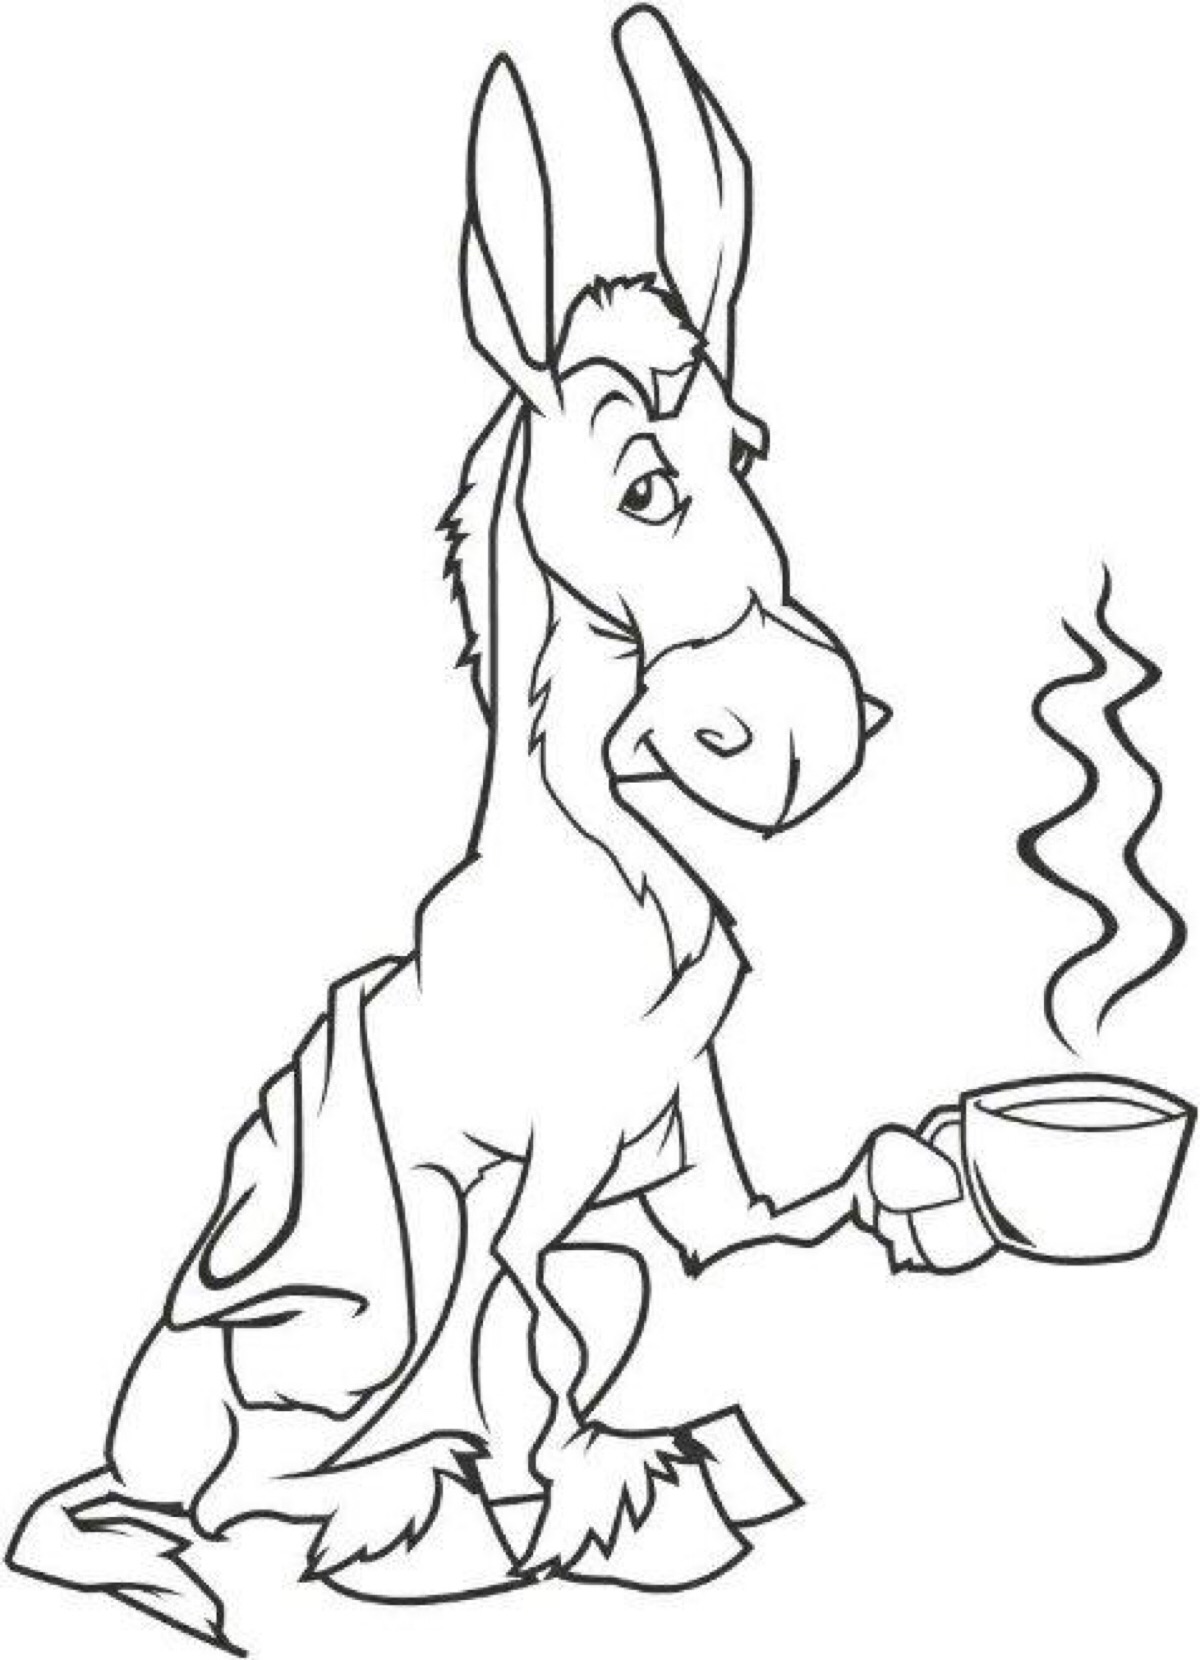 被吃掉的驴子简笔画图片